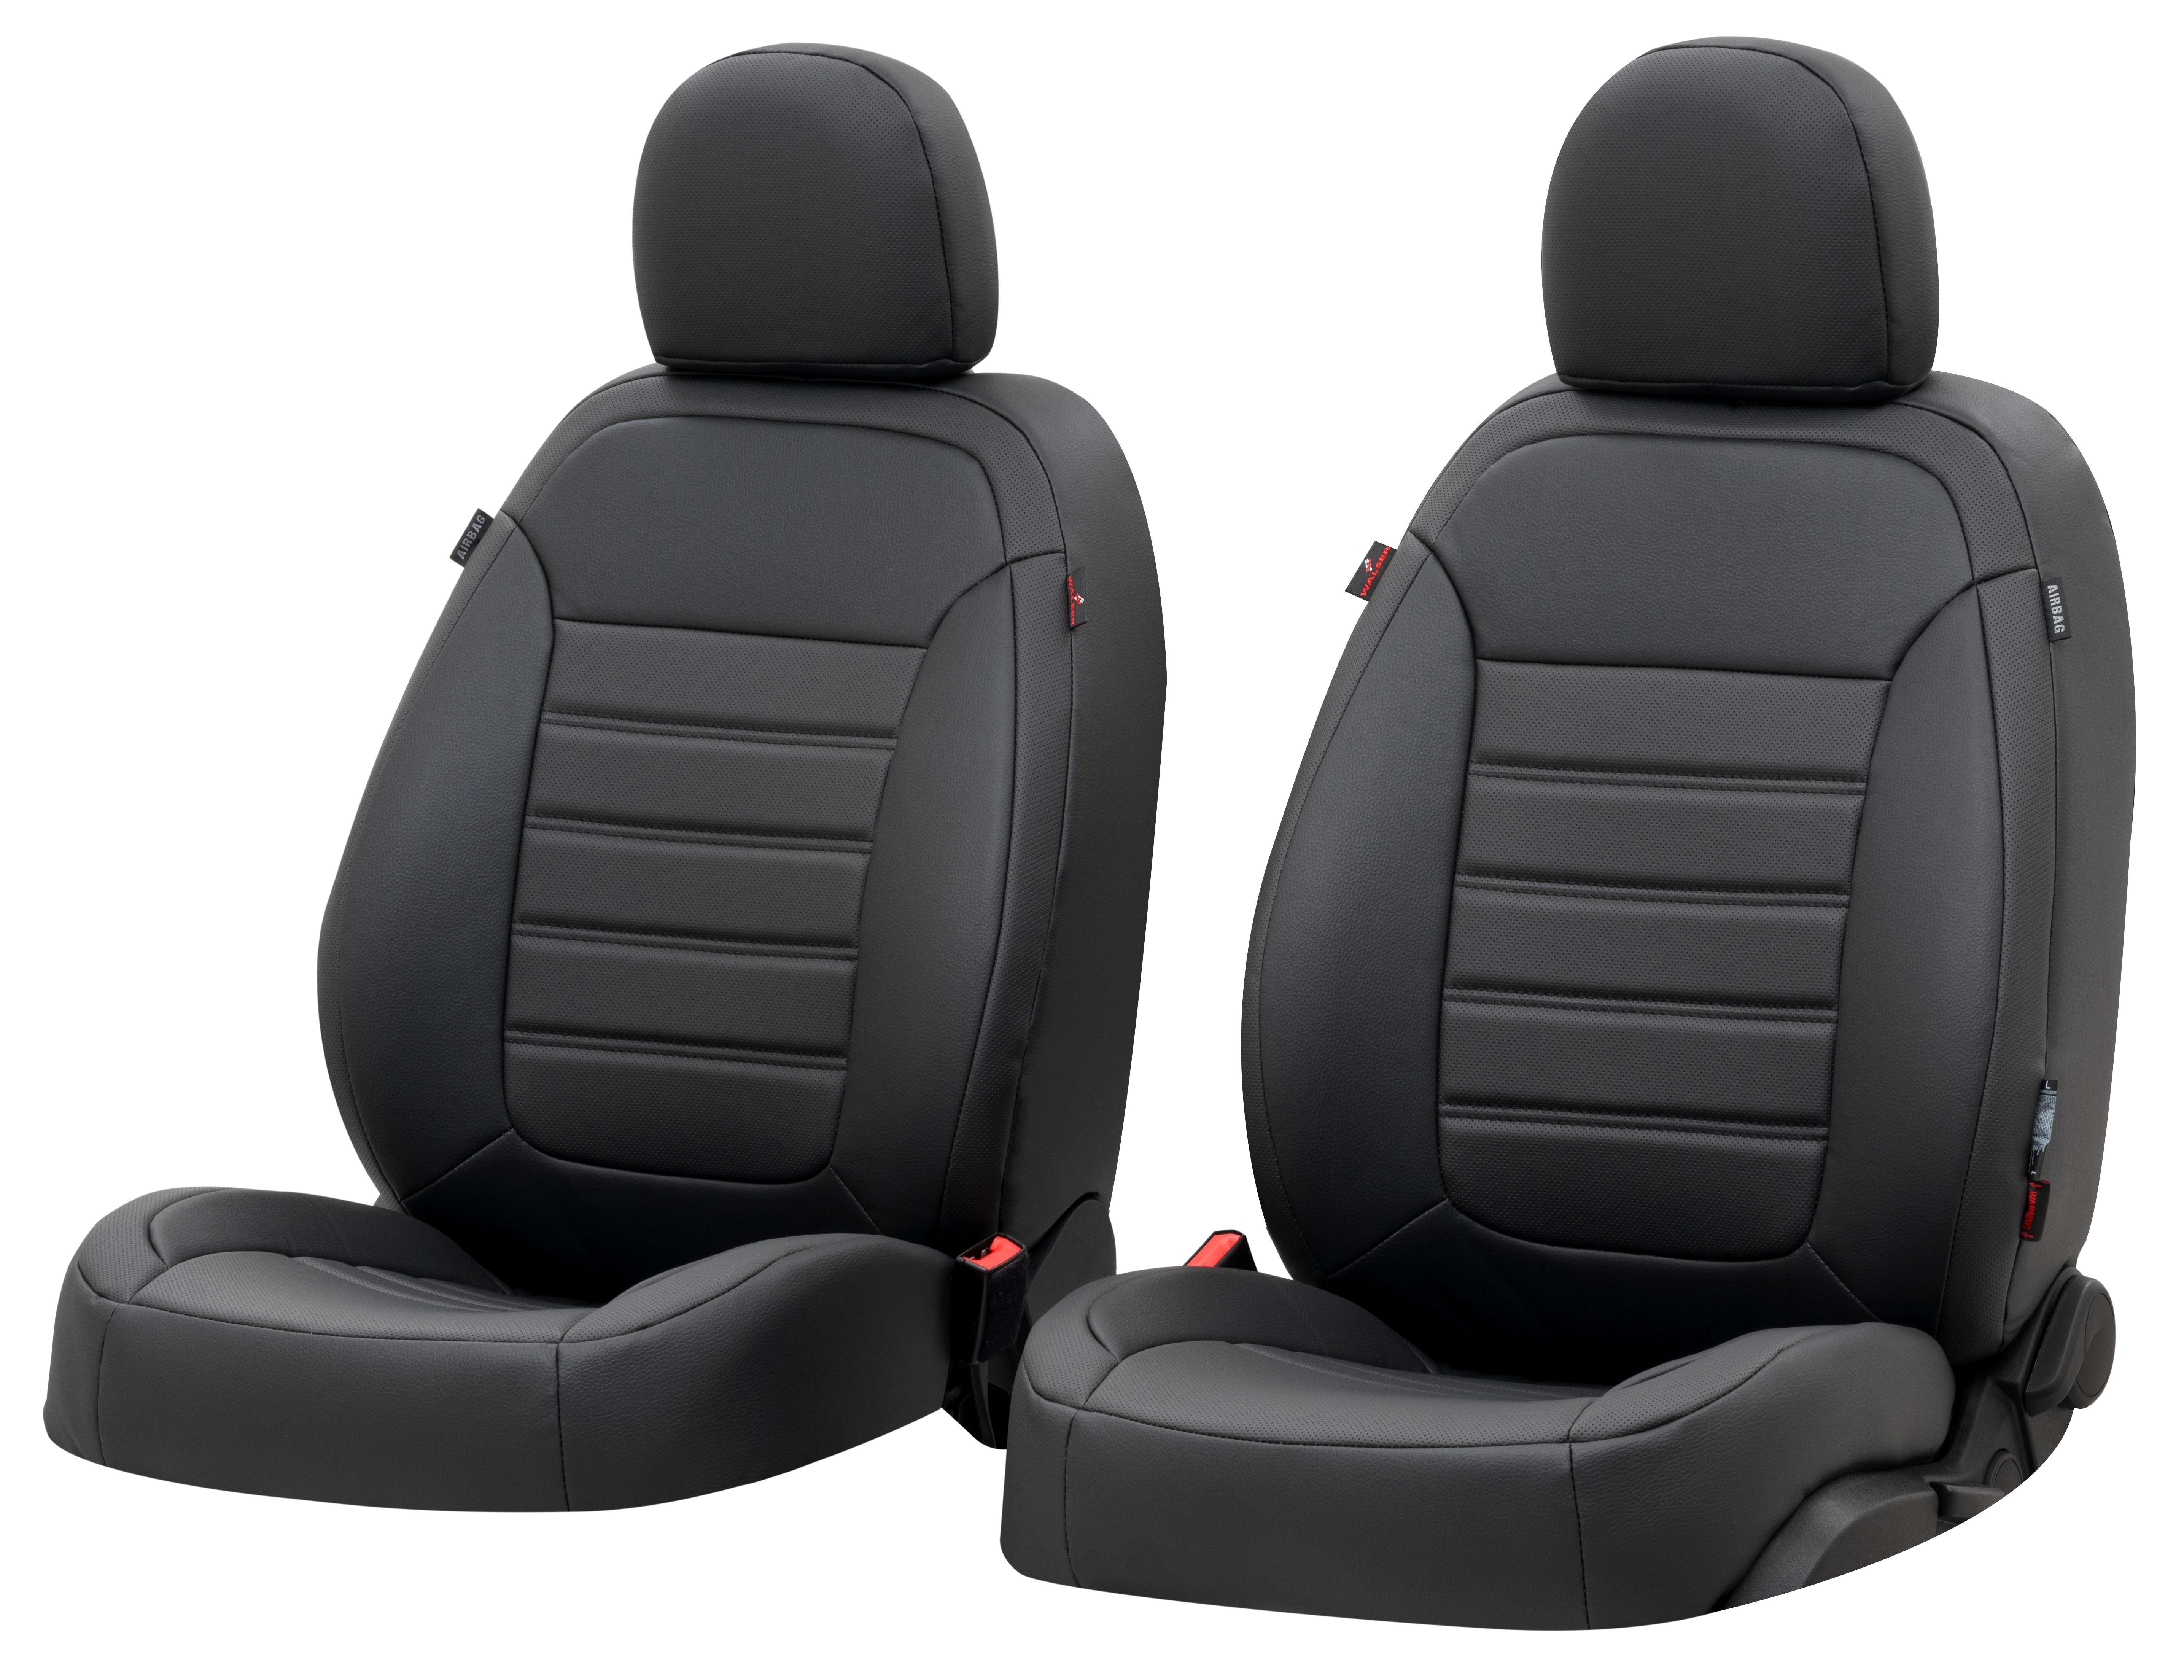 Passform Sitzbezug Robusto für VW Golf VII Comfortline 08/2012-03/2021, 2 Einzelsitzbezüge für Normalsitze